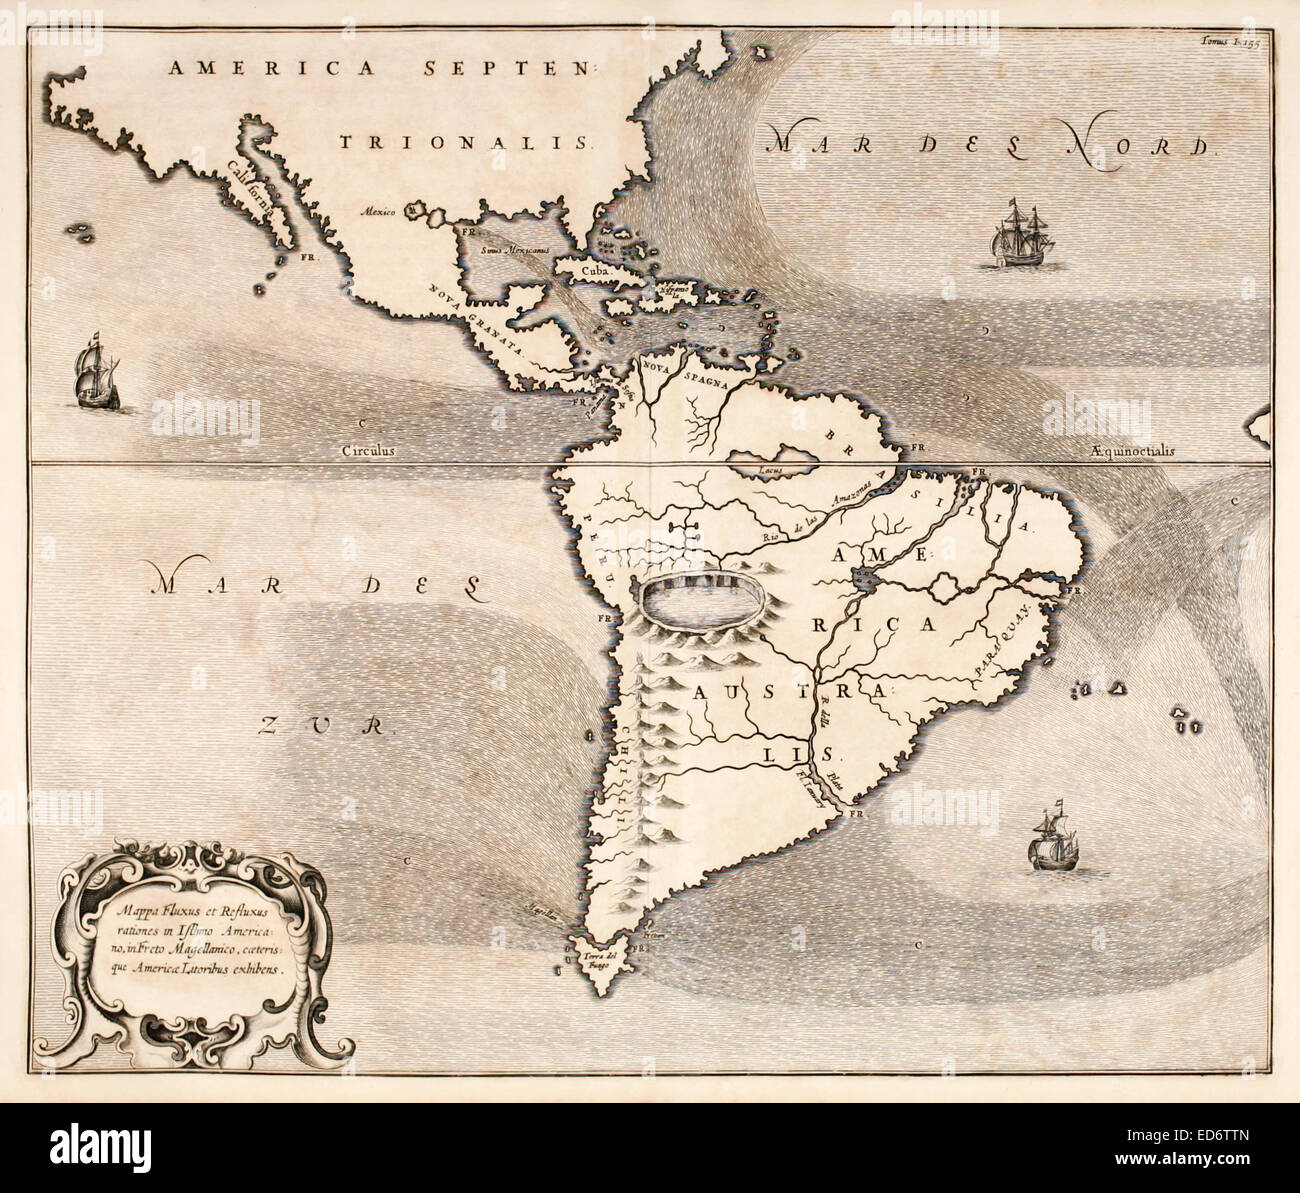 "Mappa Fluxus et Refluxus Rationes in Isthmo Americano" 17. Jahrhundert Karte von Nord- und Südamerika zeigen die Meeresströmungen. Es zeigt auch Flüsse, Seen, die Anden als Vulkane und ein riesiger See in einem Krater als die Quelle des Amazonas. Siehe Beschreibung für mehr Informationen. Stockfoto